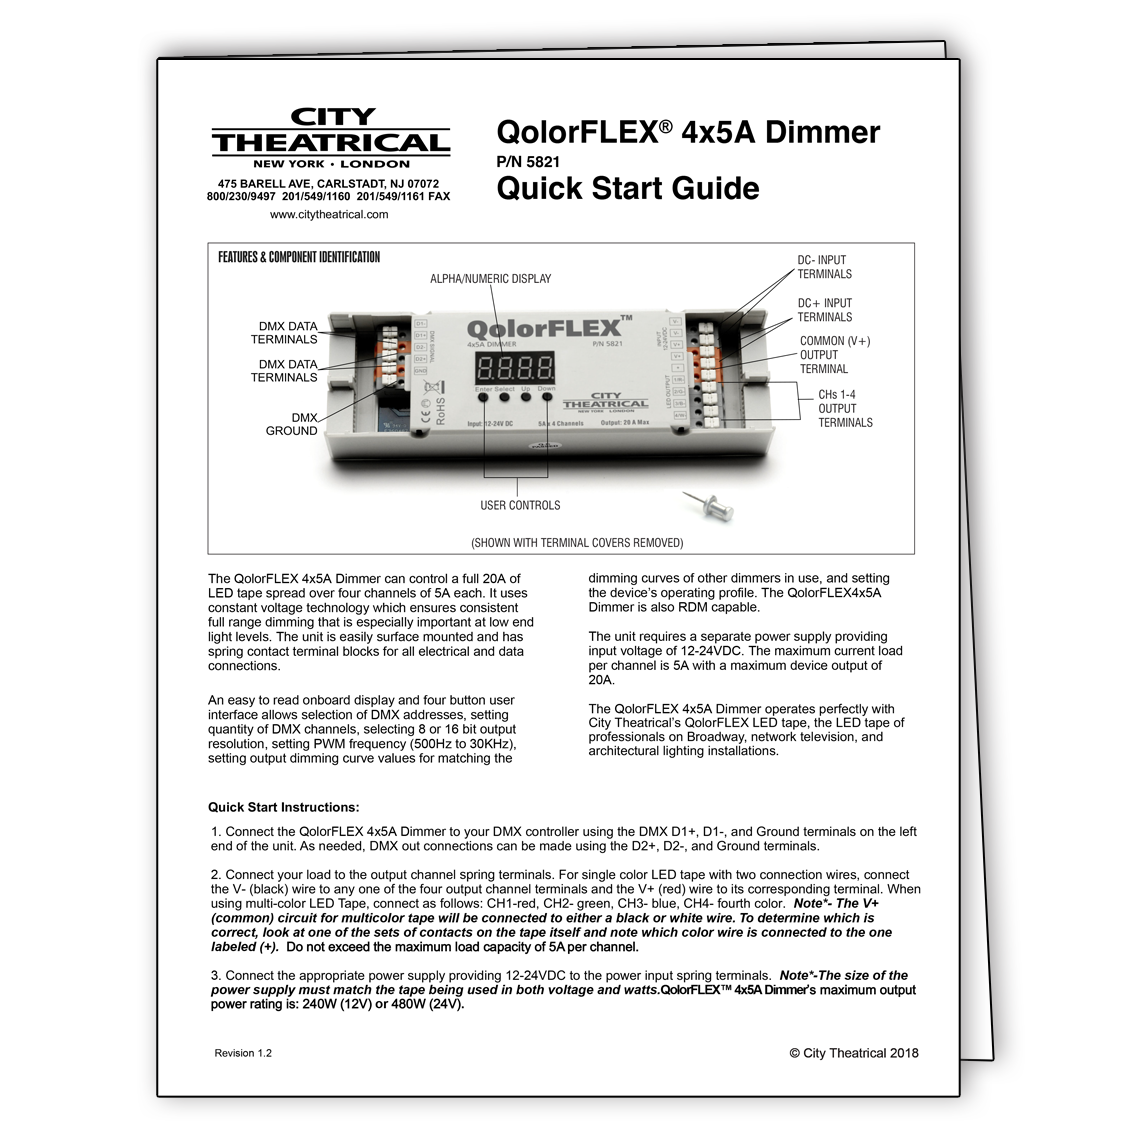 QolorFLEX 4x5A Dimmer (5821) Quick Start Guide